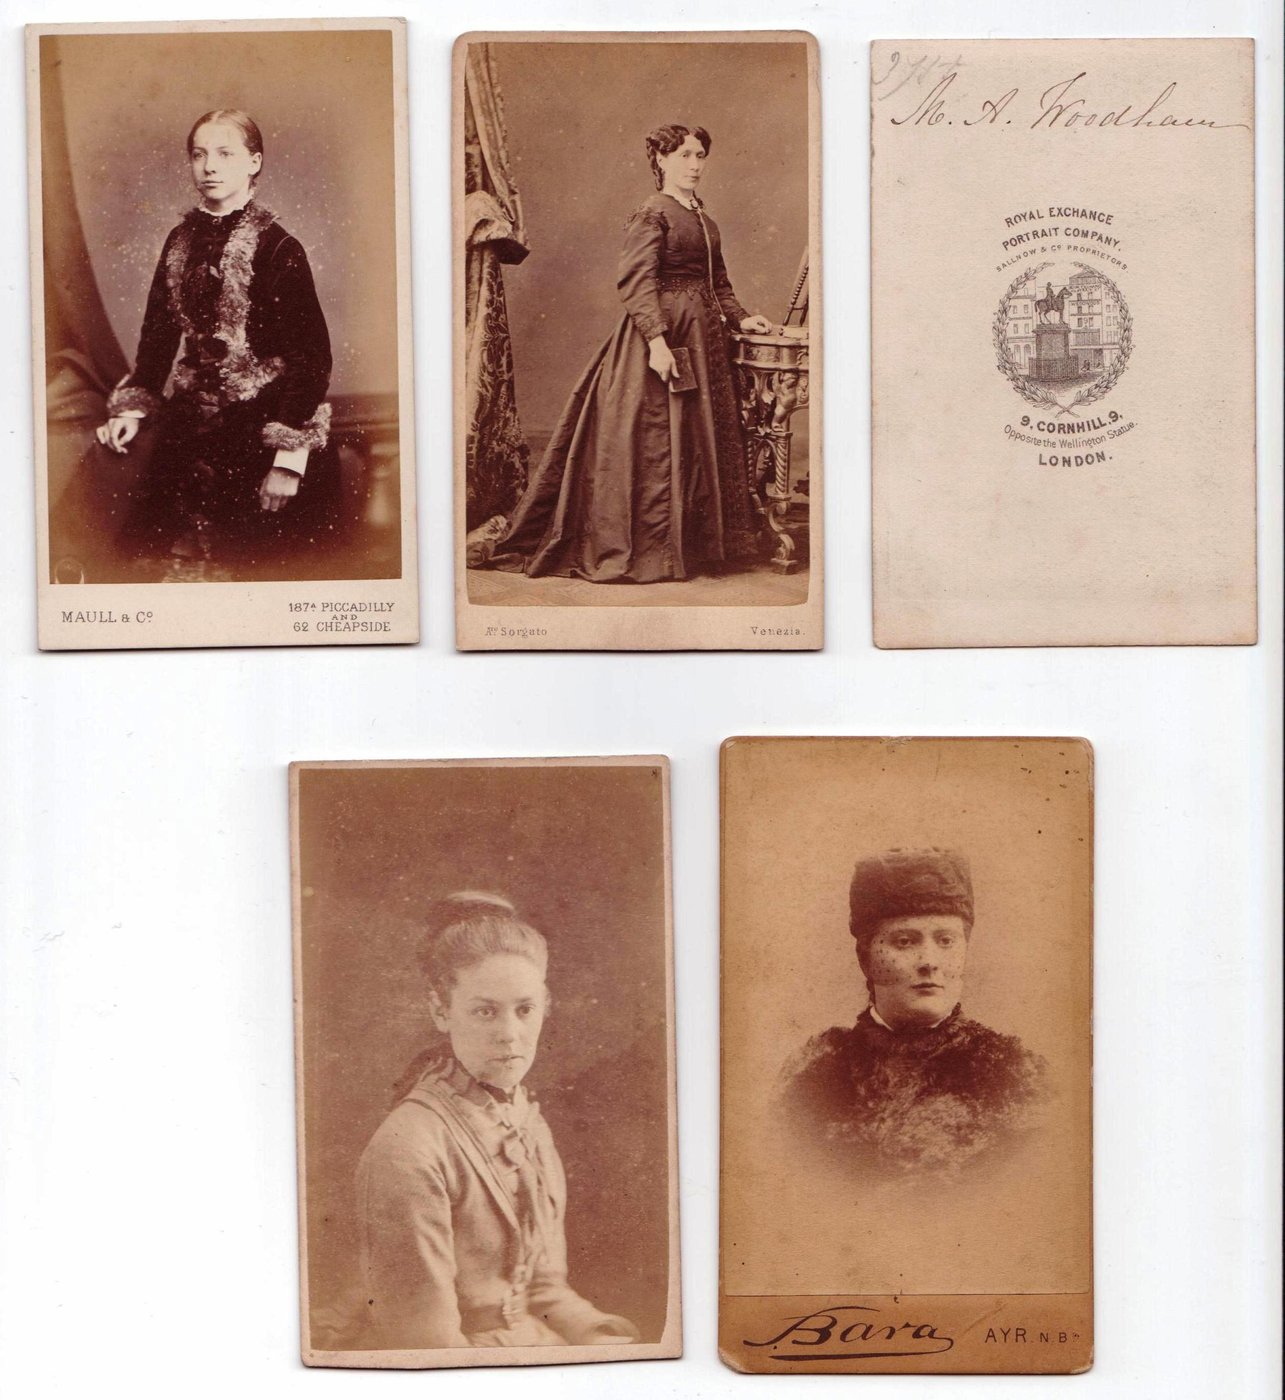 Cartes-de-Visite. Portraitaufnahmen von 4 Frauen und eine Seite mit dem Logo der Royal Portrait Company London